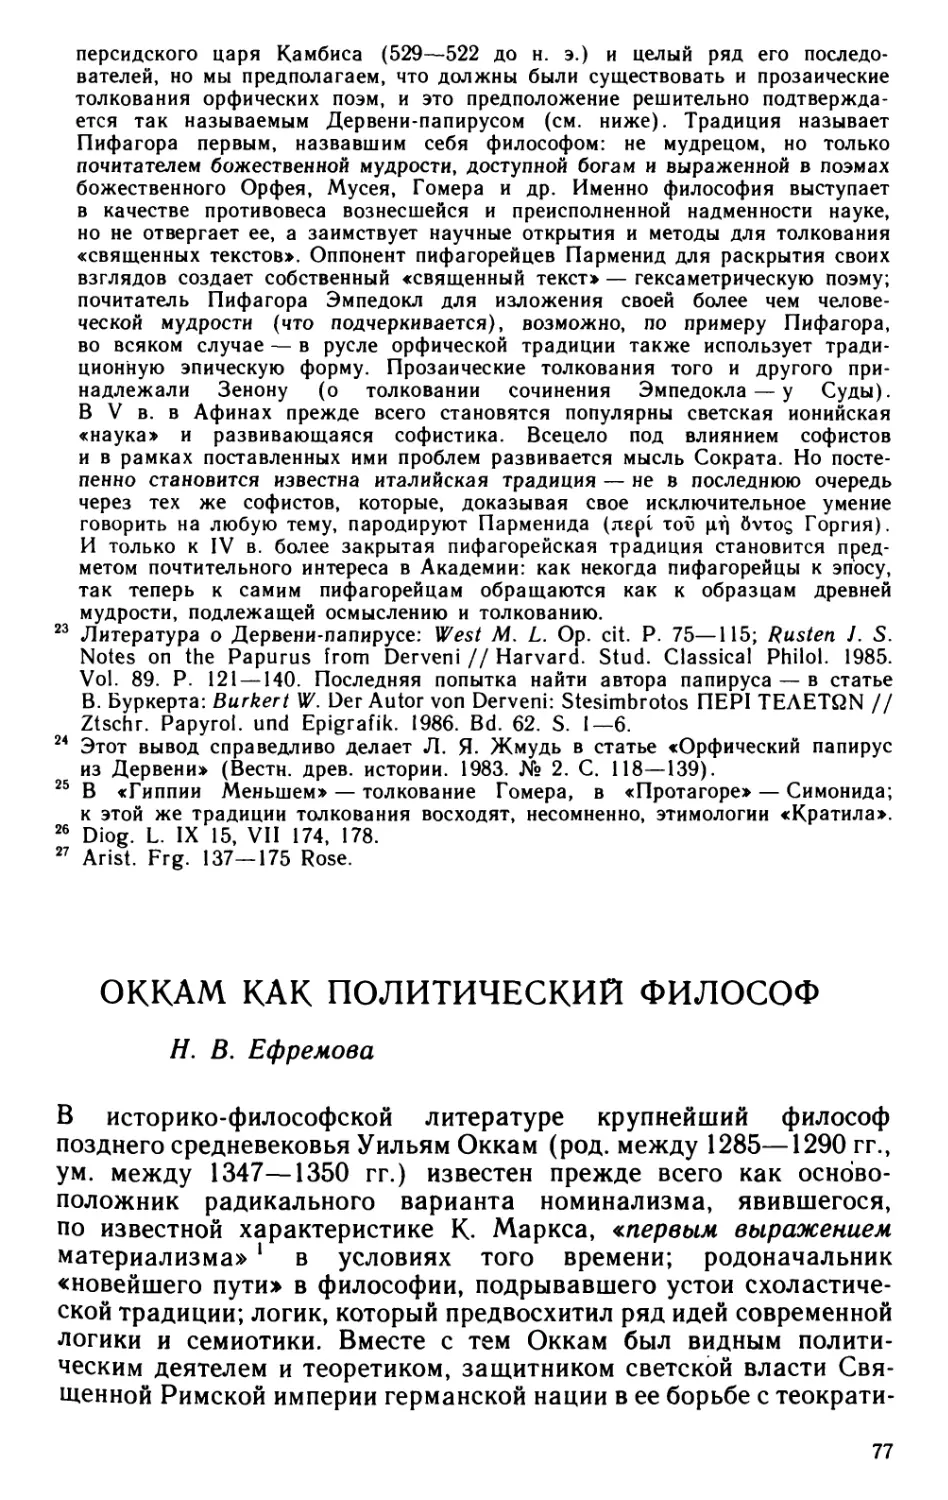 Ефремова Н.В. Оккам как политический философ